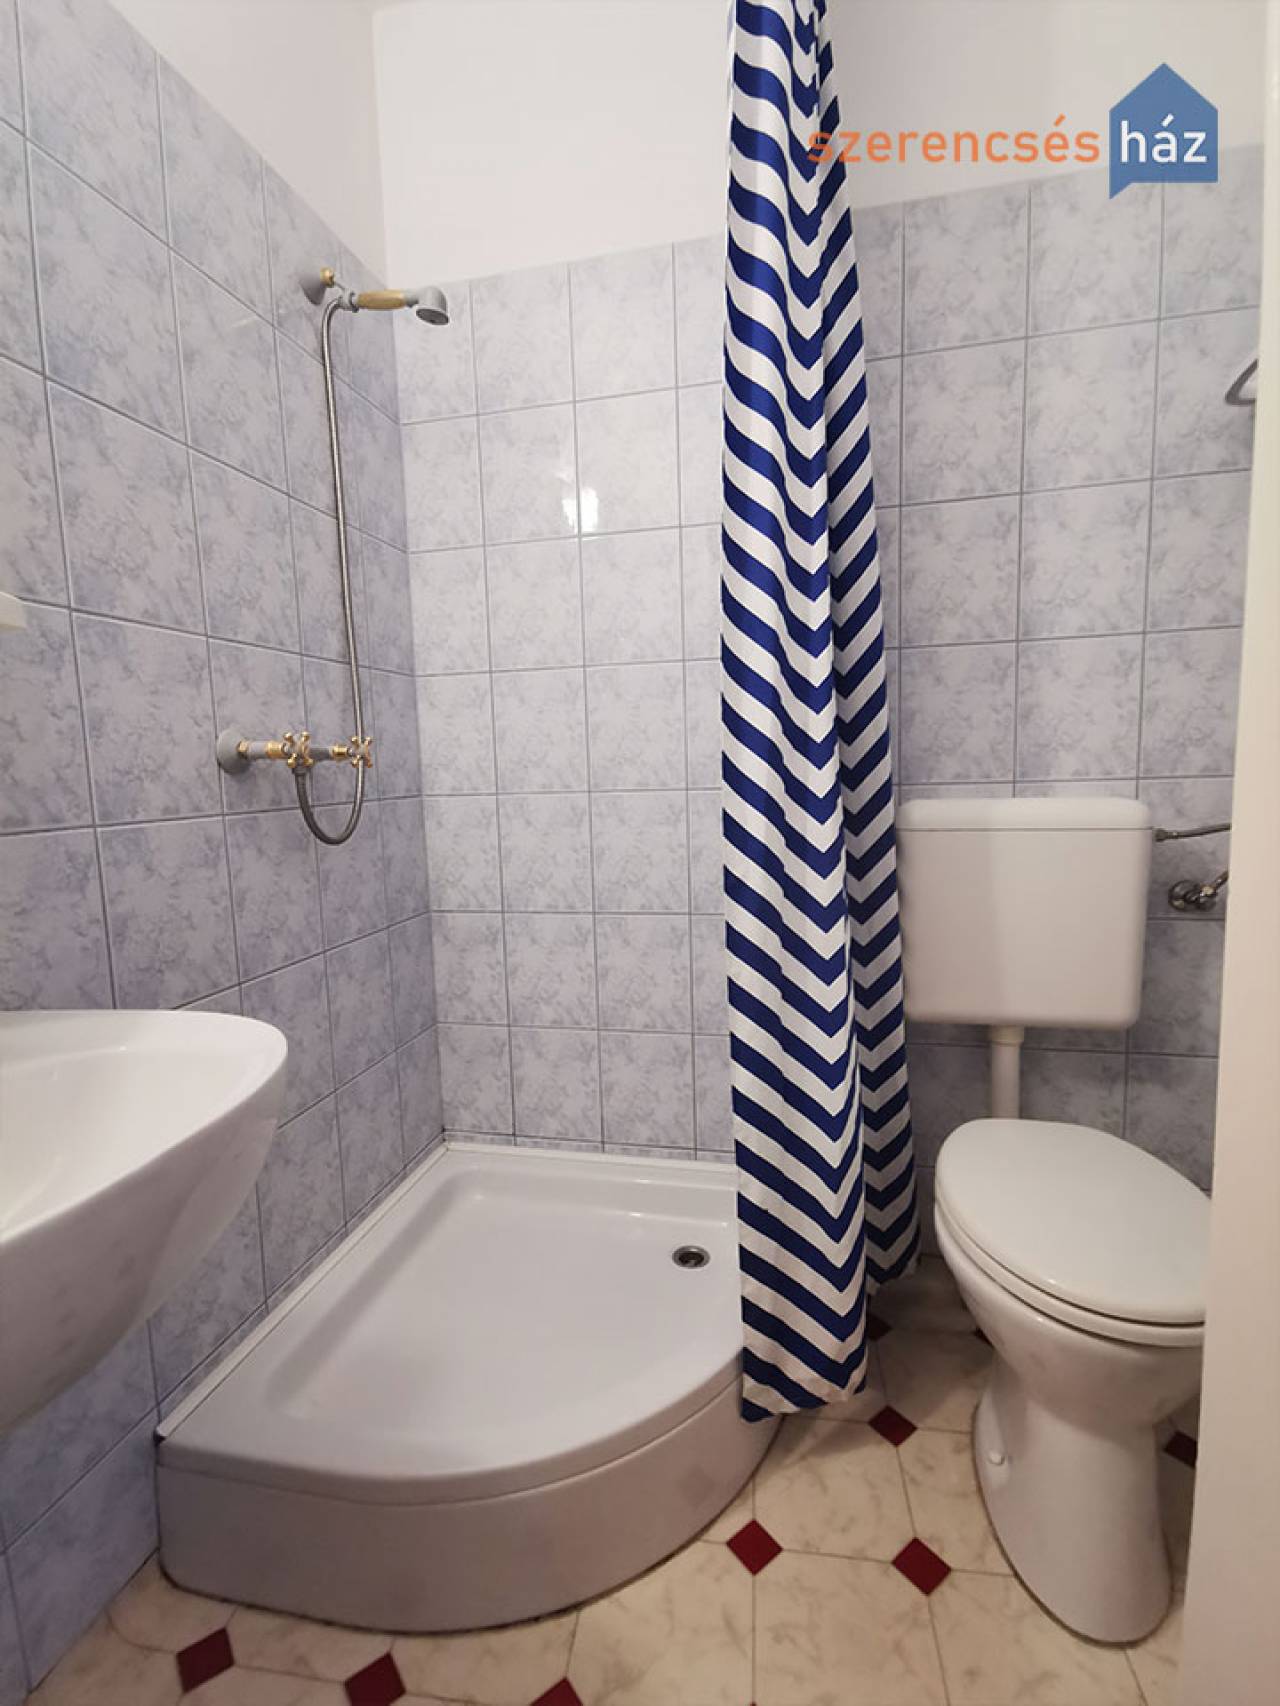 Bútorozott szobák saját fürdőszobával kiadók Sopronban